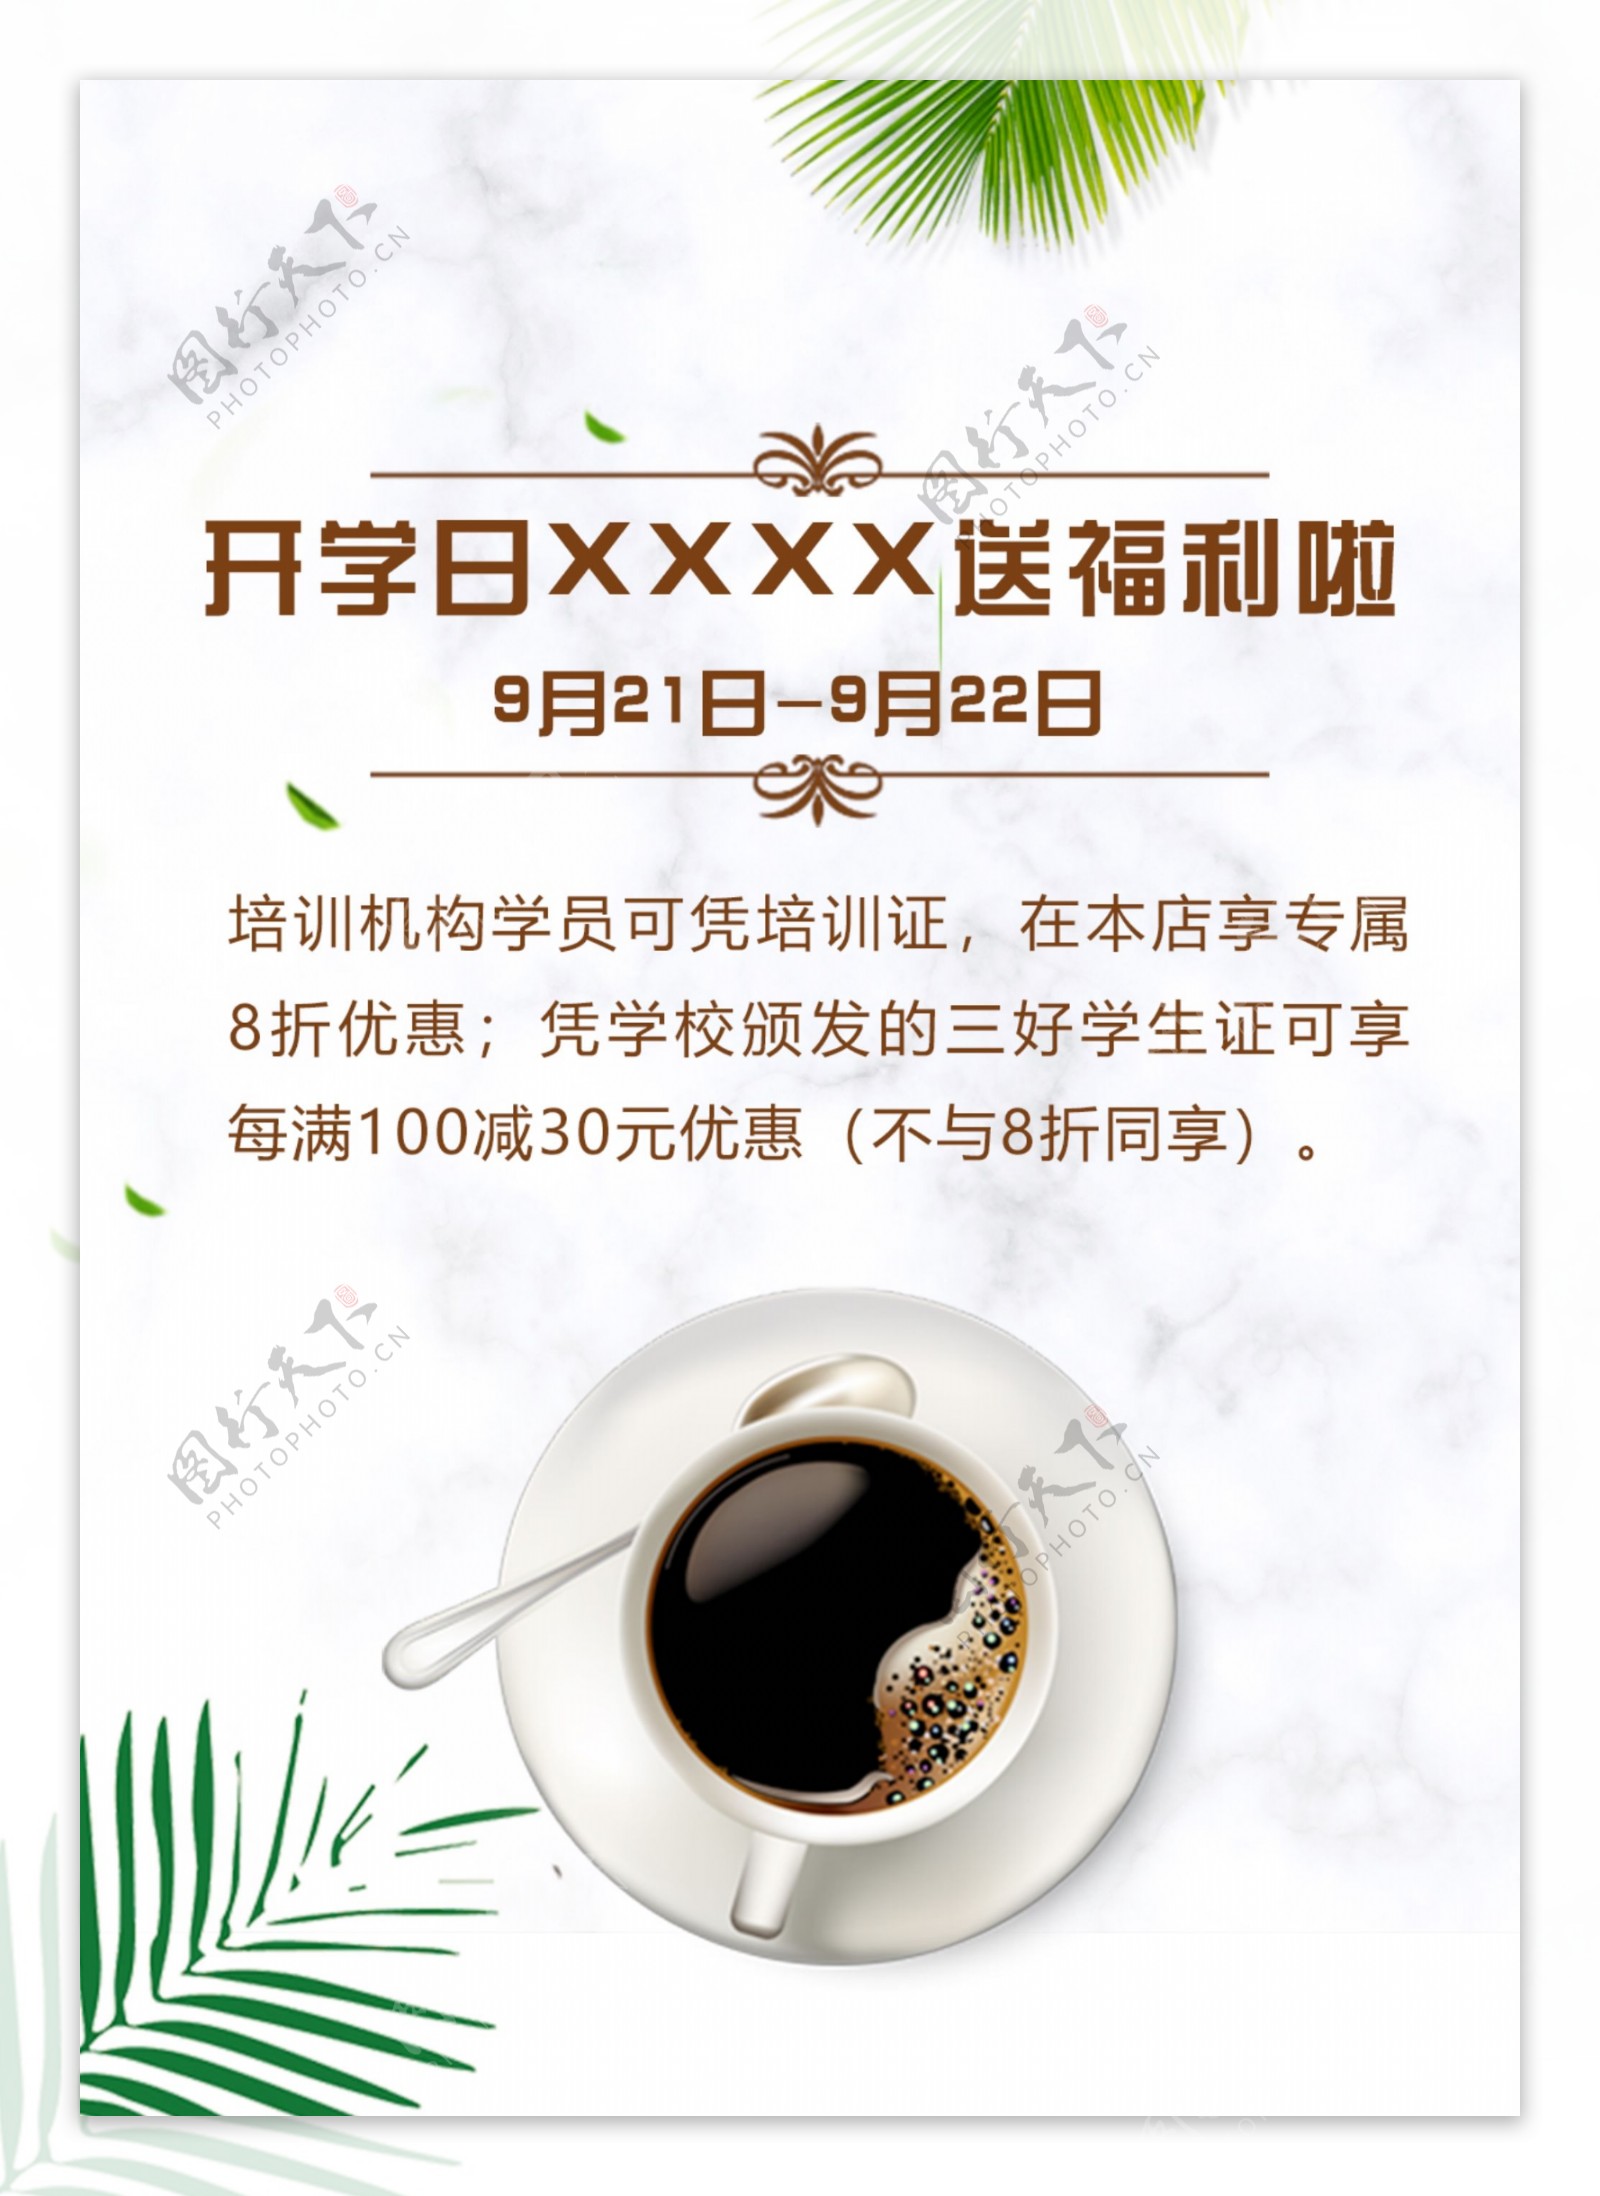 饮品店通知饮品海报咖啡宣传